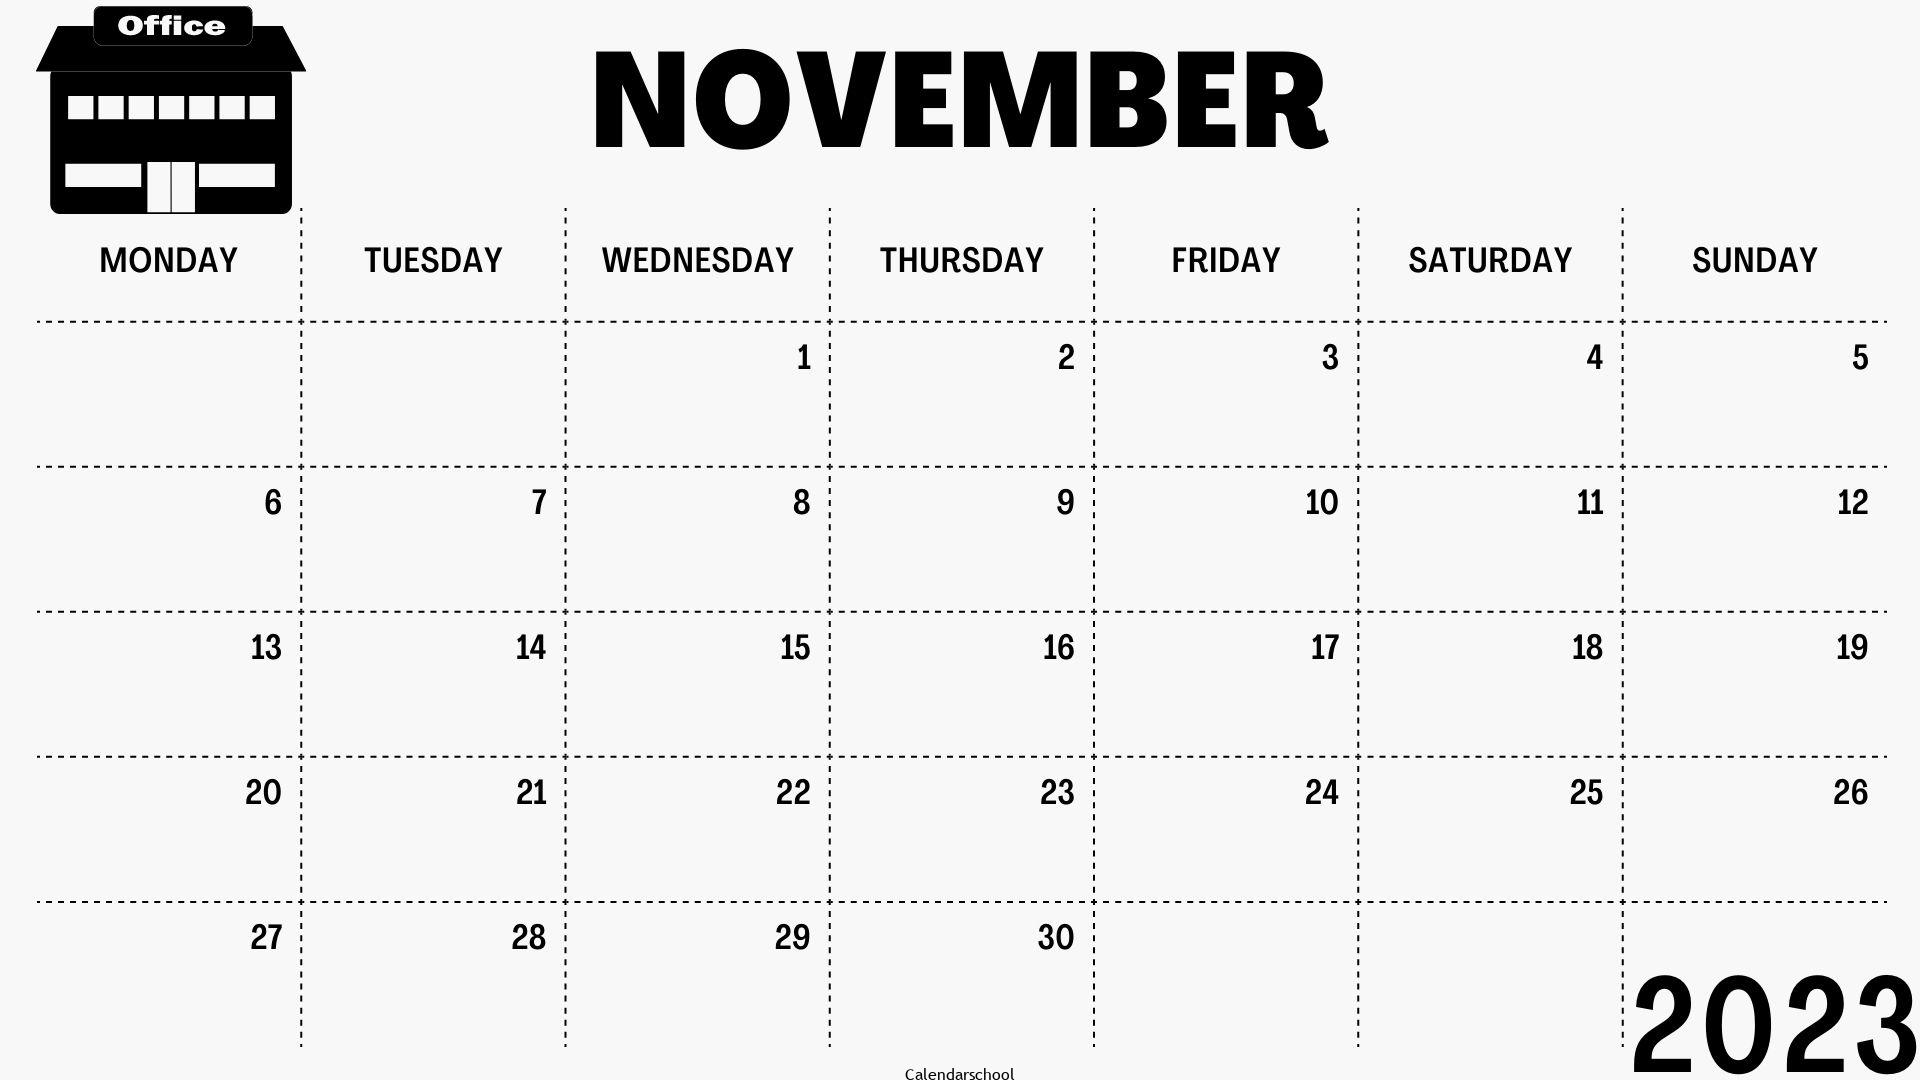 Calendar November 2023 With Festivals